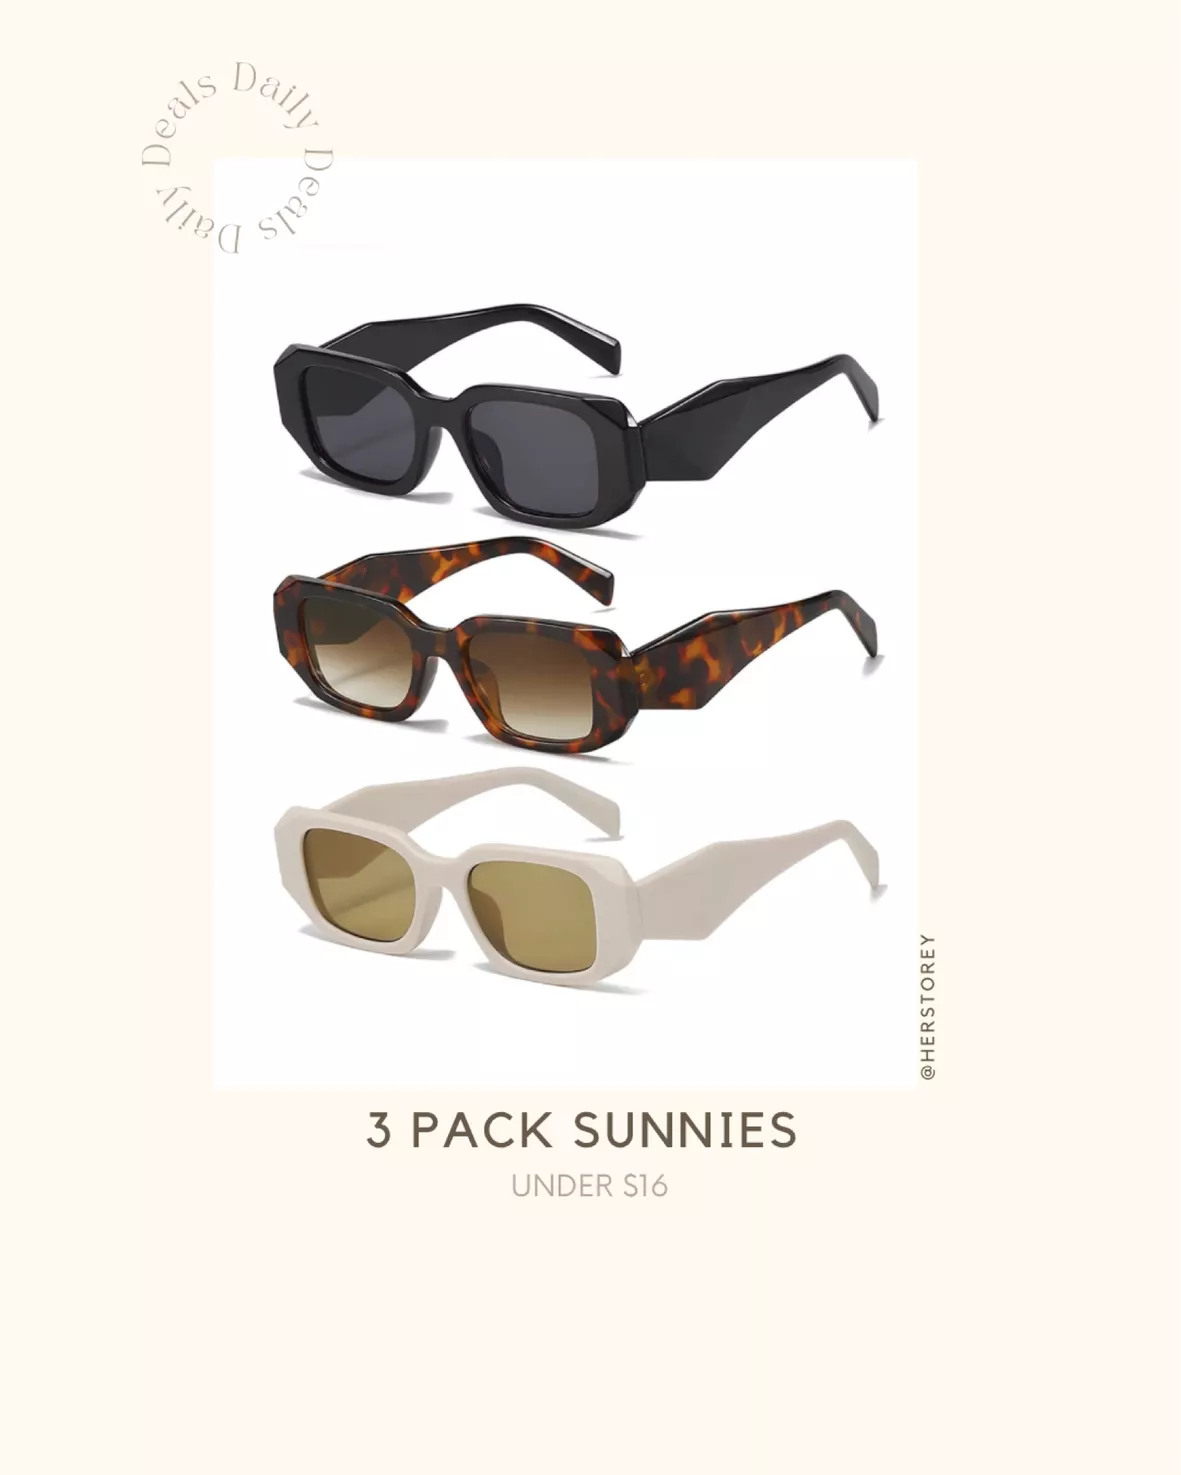 So Sarplastic Black Sunglasses, Le Specs